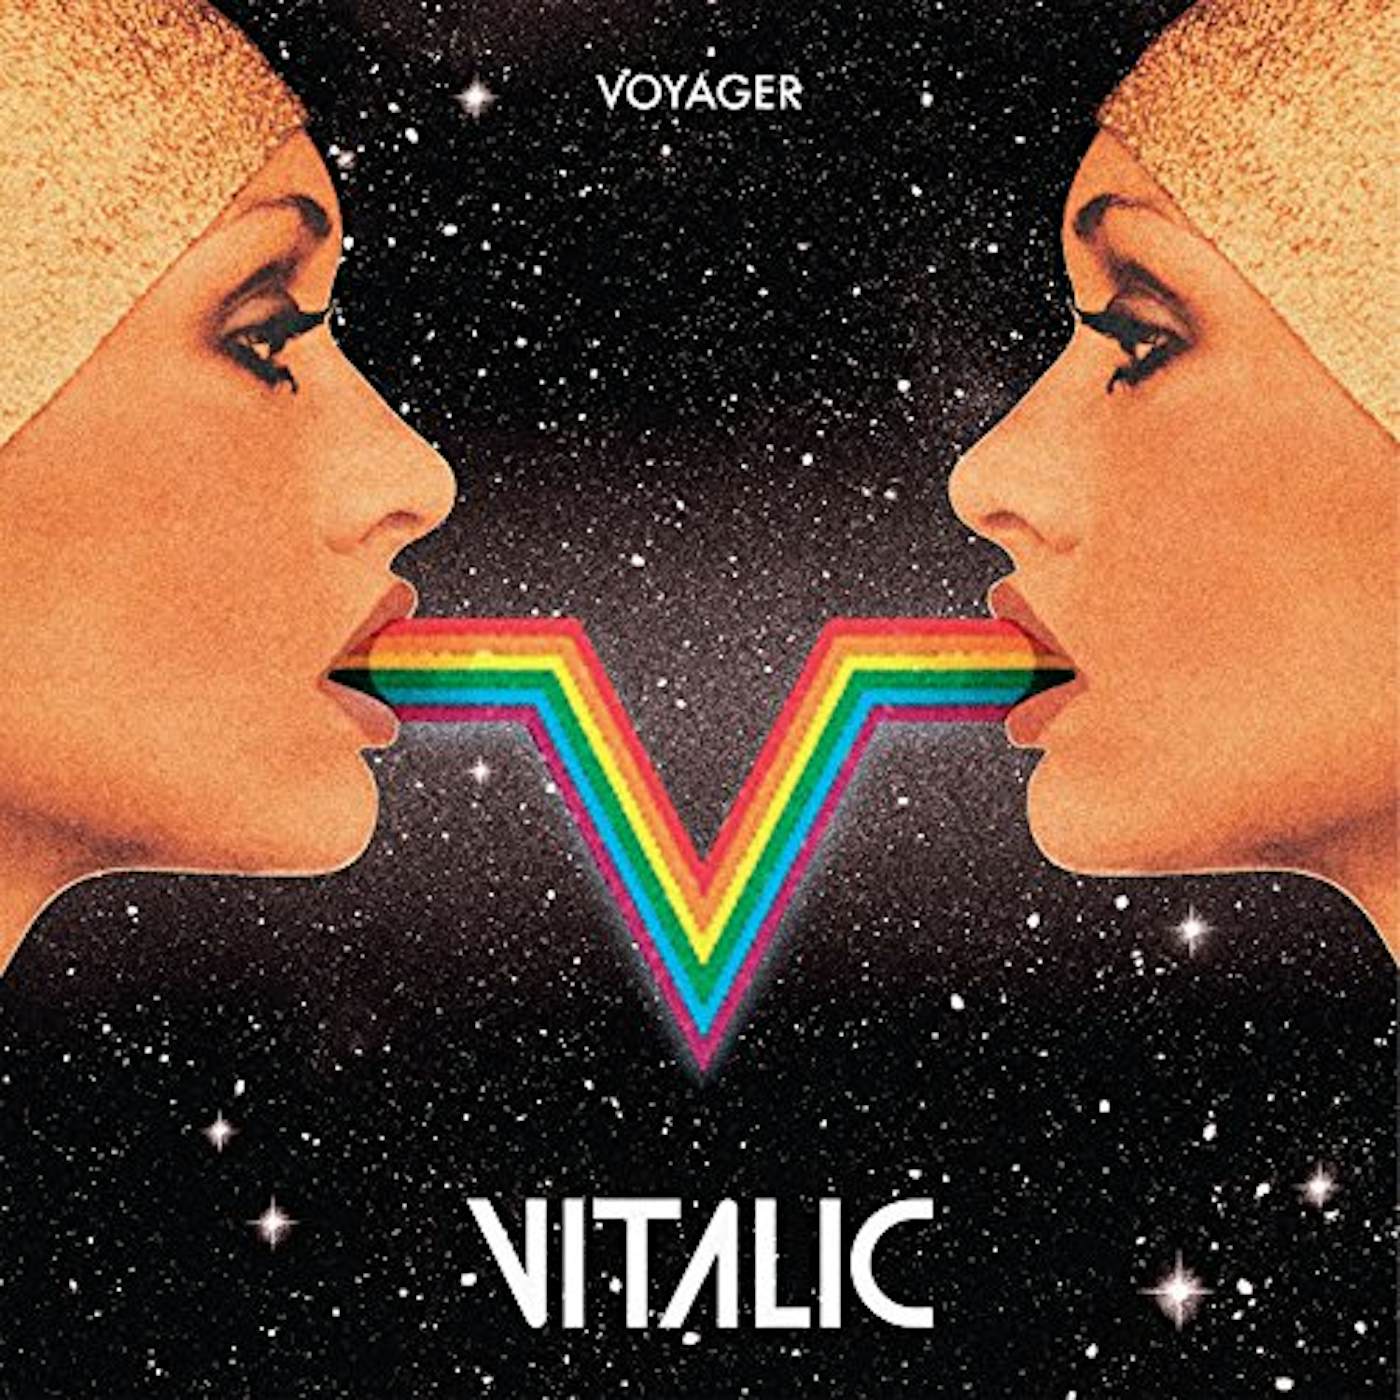 Vitalic Voyager Vinyl Record